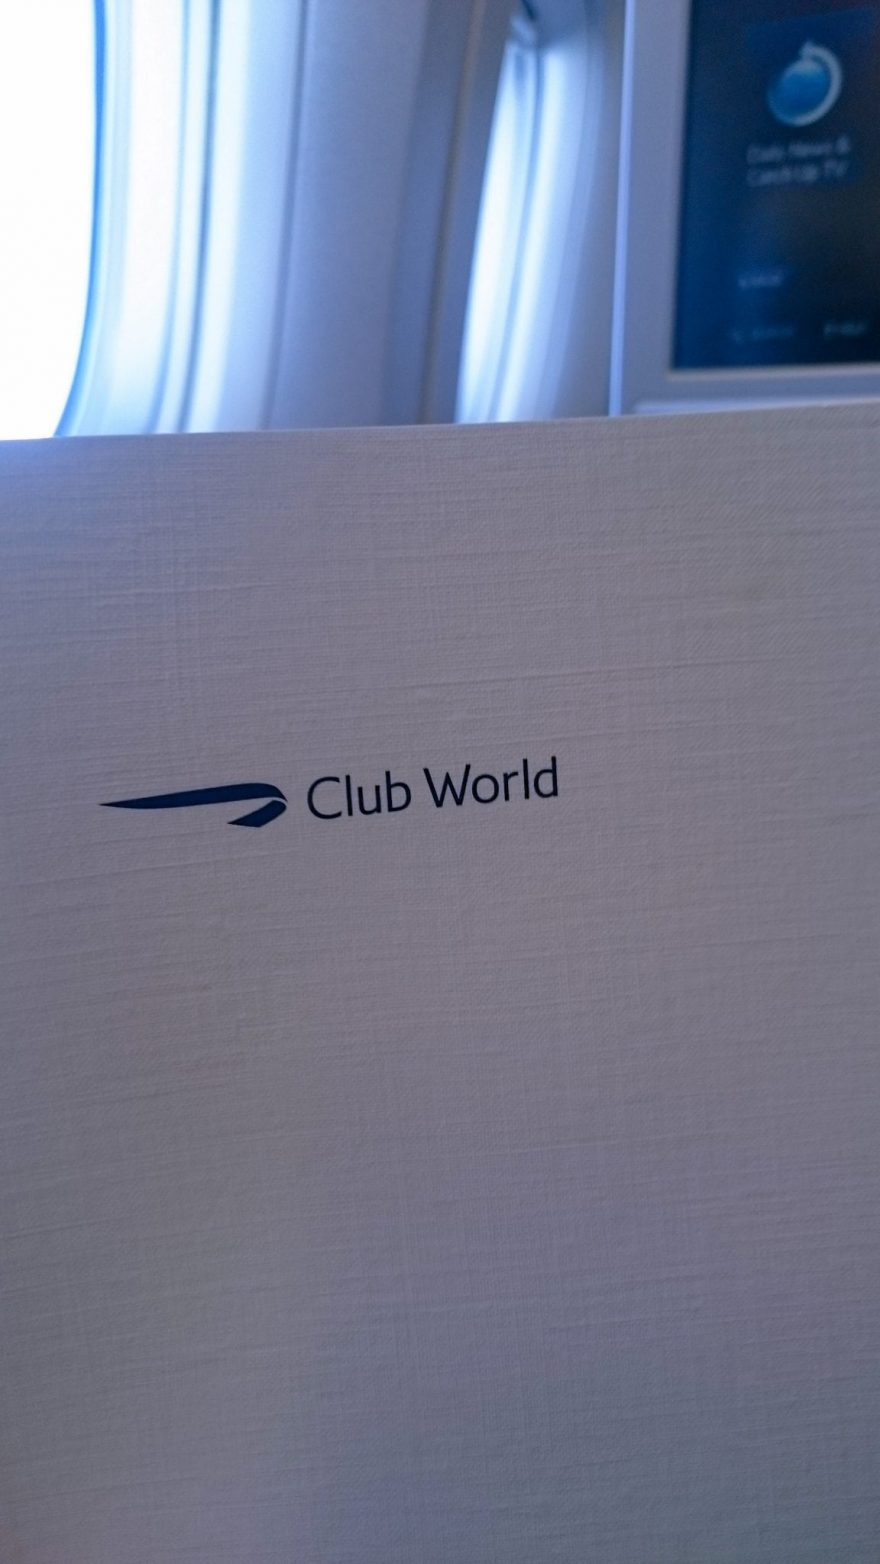 REVIEW - British Airways Club World 777 - The Luxury Traveller